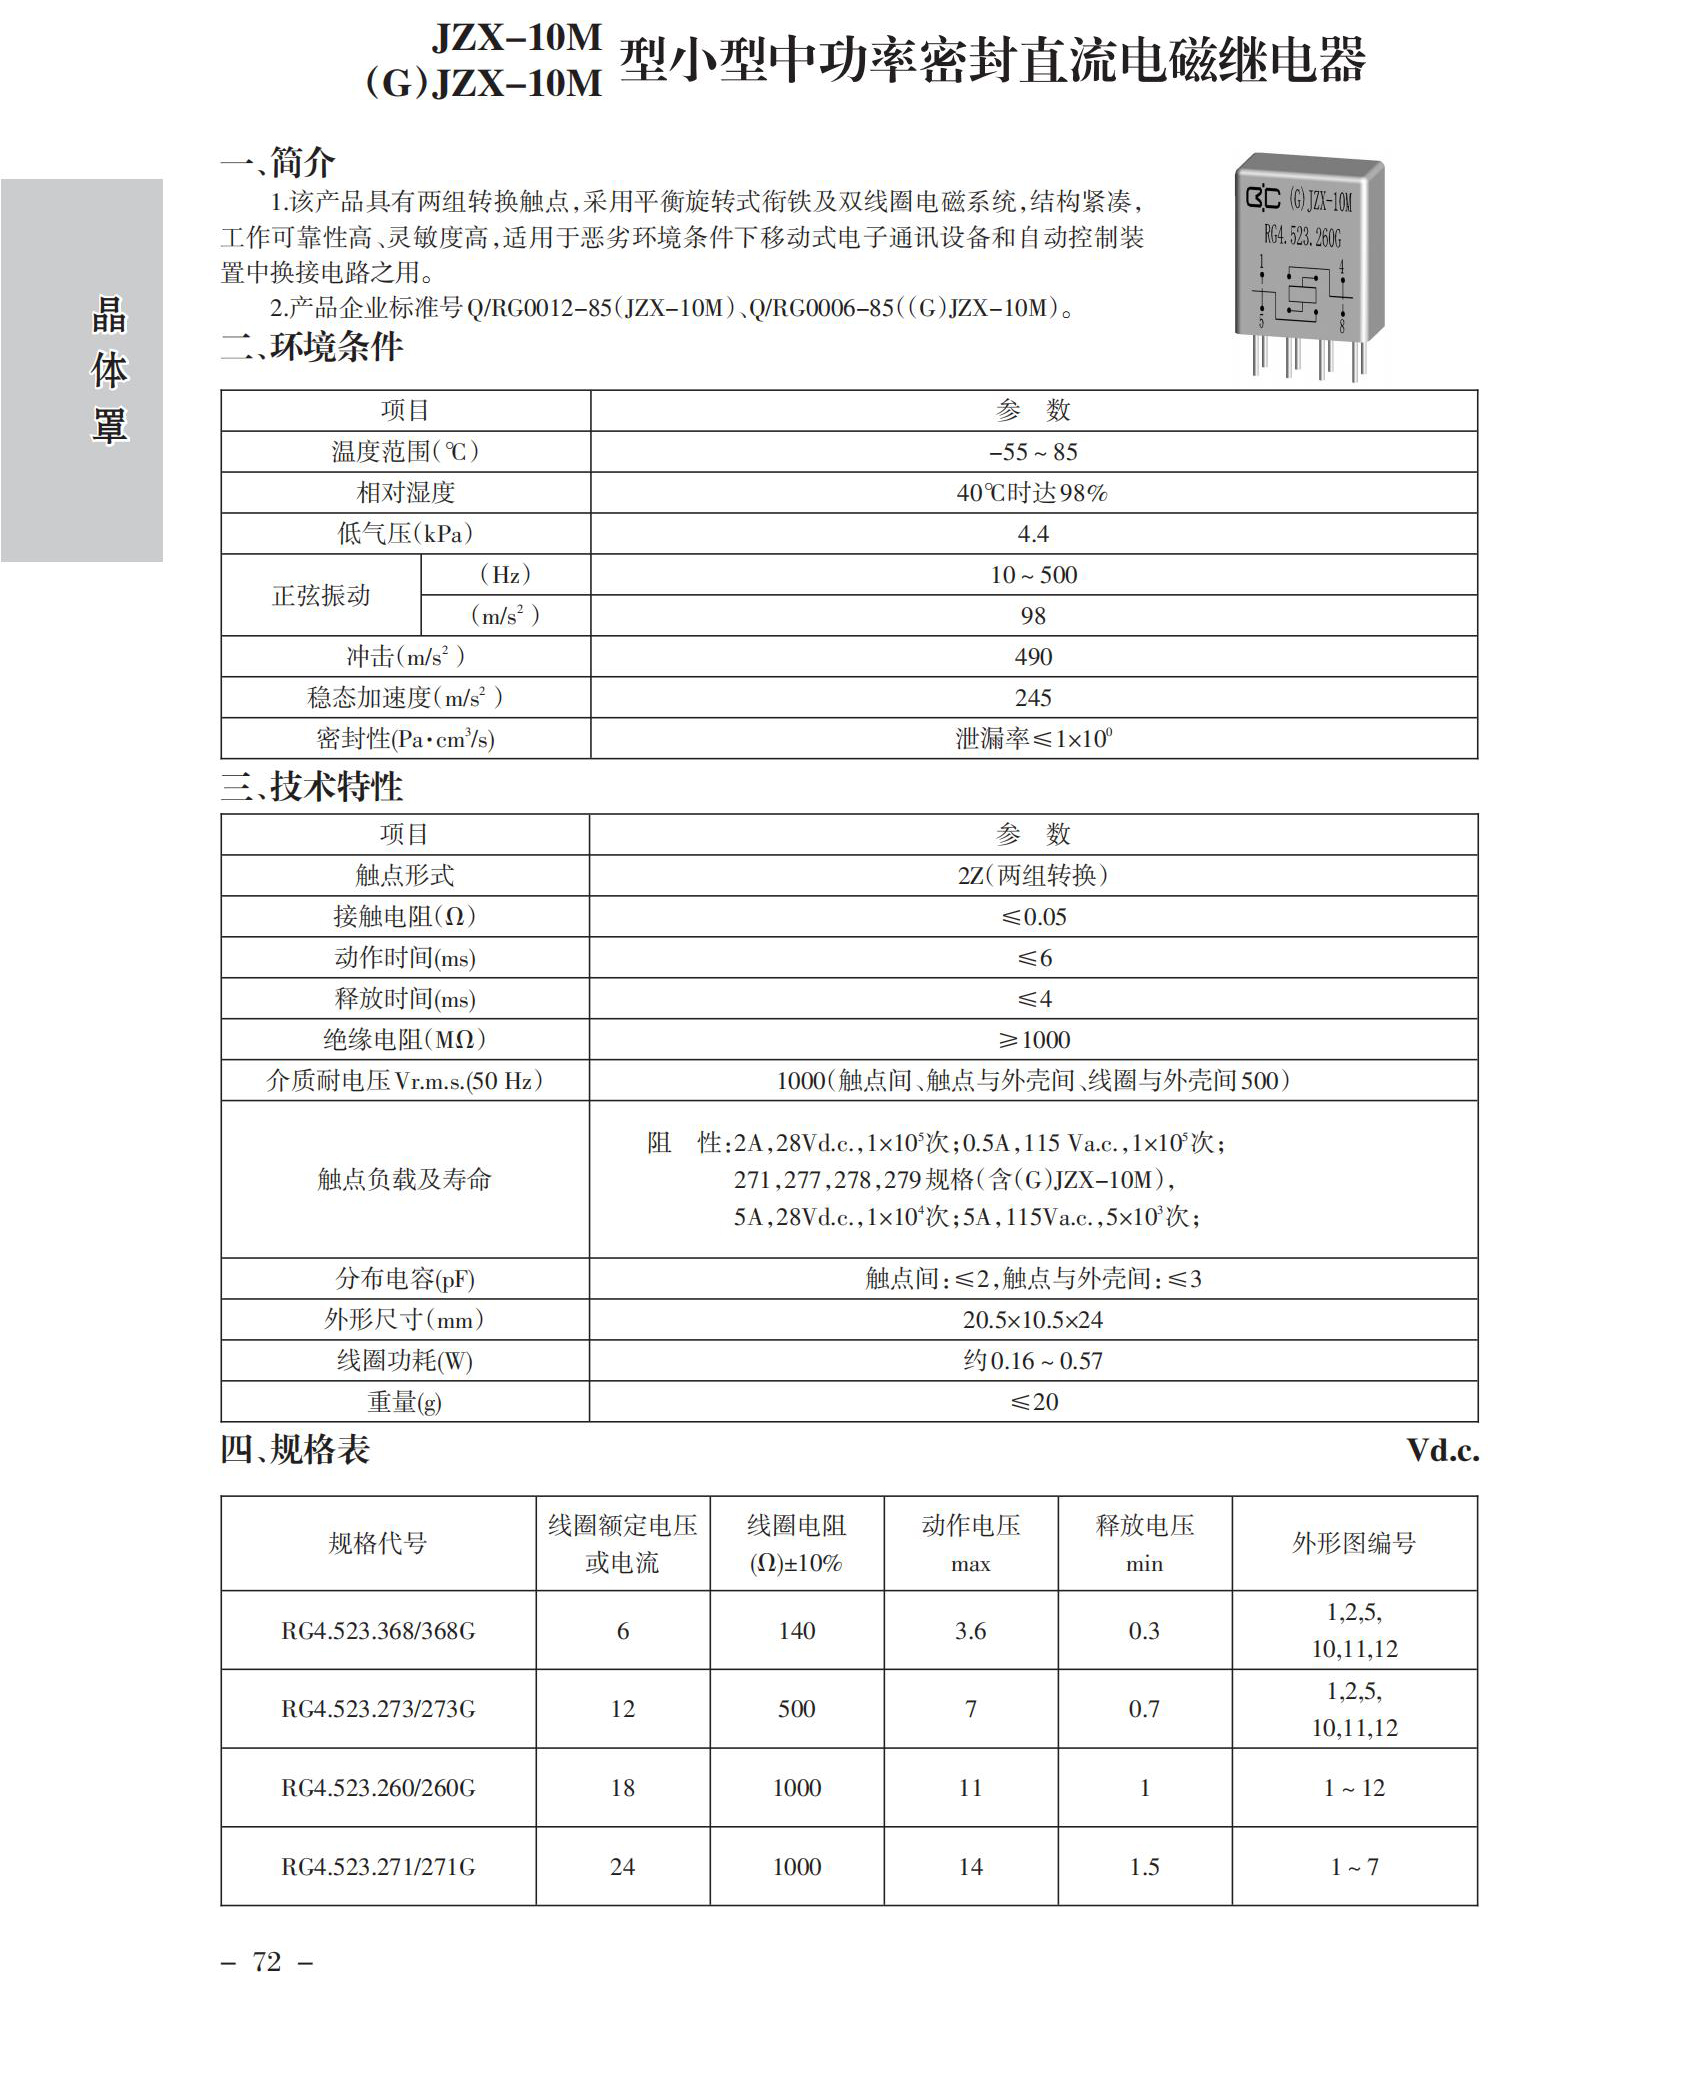 JZX-10M(G)JZX-10M中文版_001.jpg